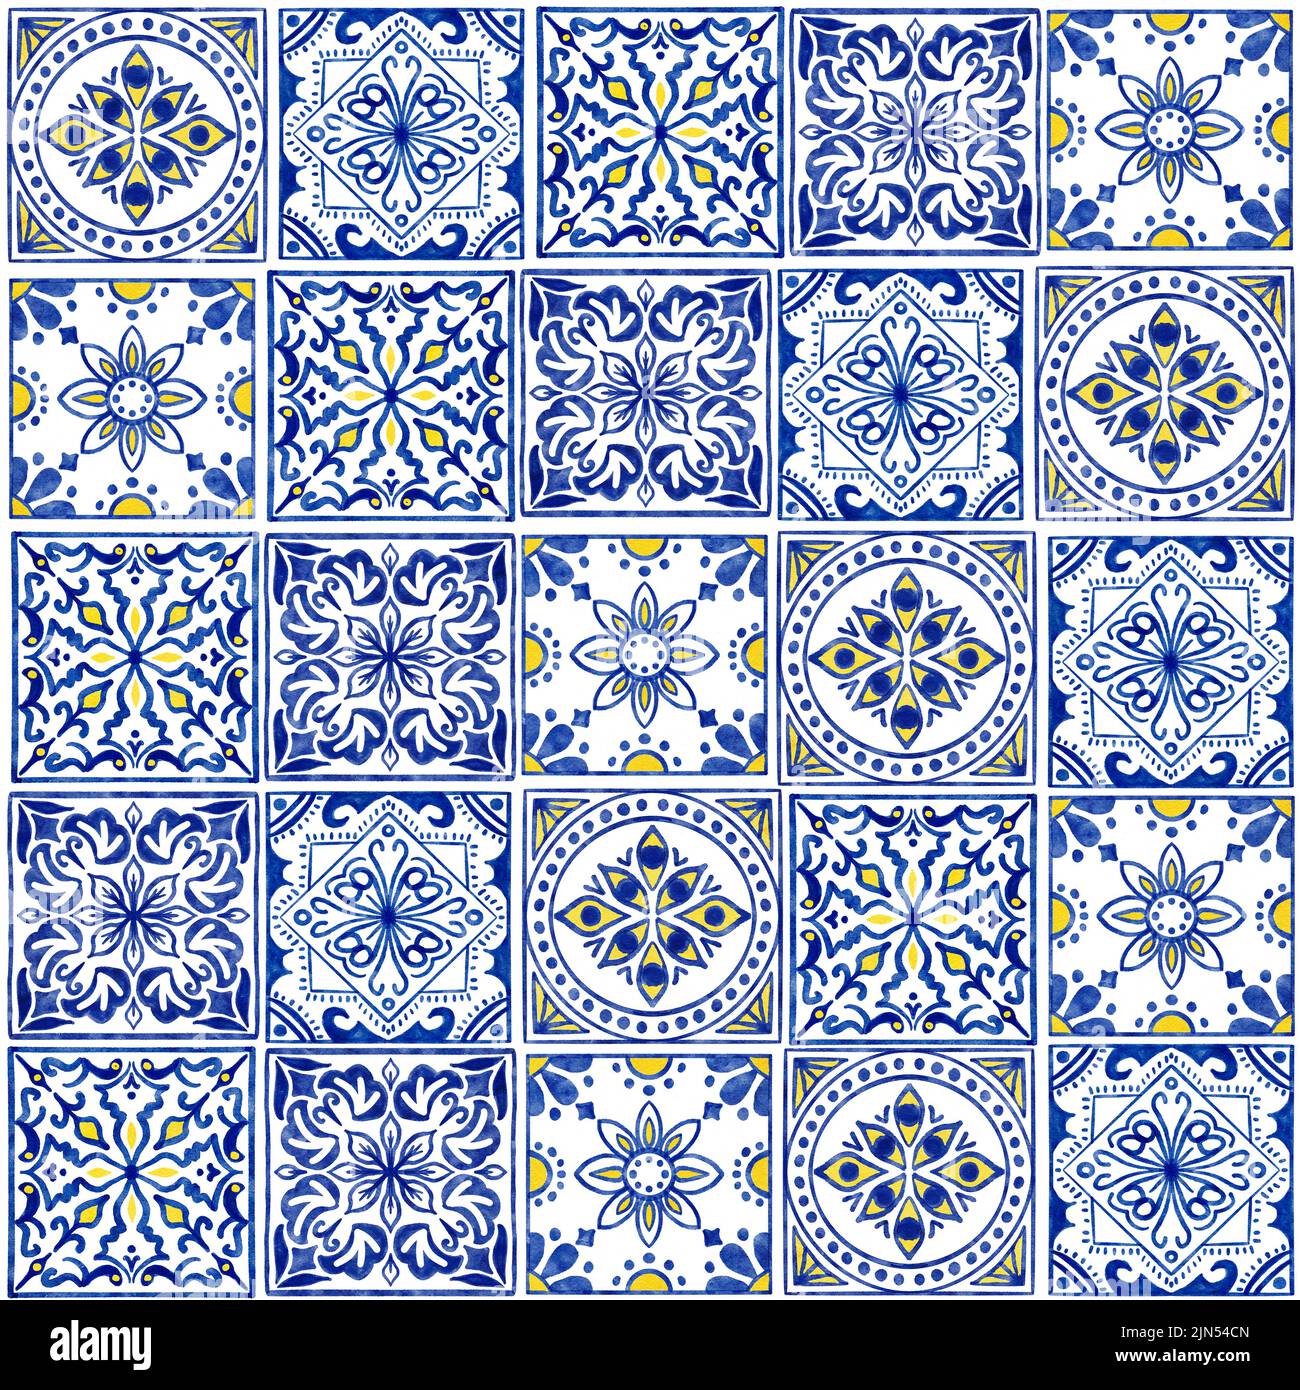 Handgezeichnetes, nahtloses Aquarell-Muster mit blauen weißen Azulejo-portugiesischen Keramikfliesen. Ethnische portugal geomentric Indigo wiederholte Wand Boden Ornament. Arabischer ornamentaler Hintergrund Stockfoto